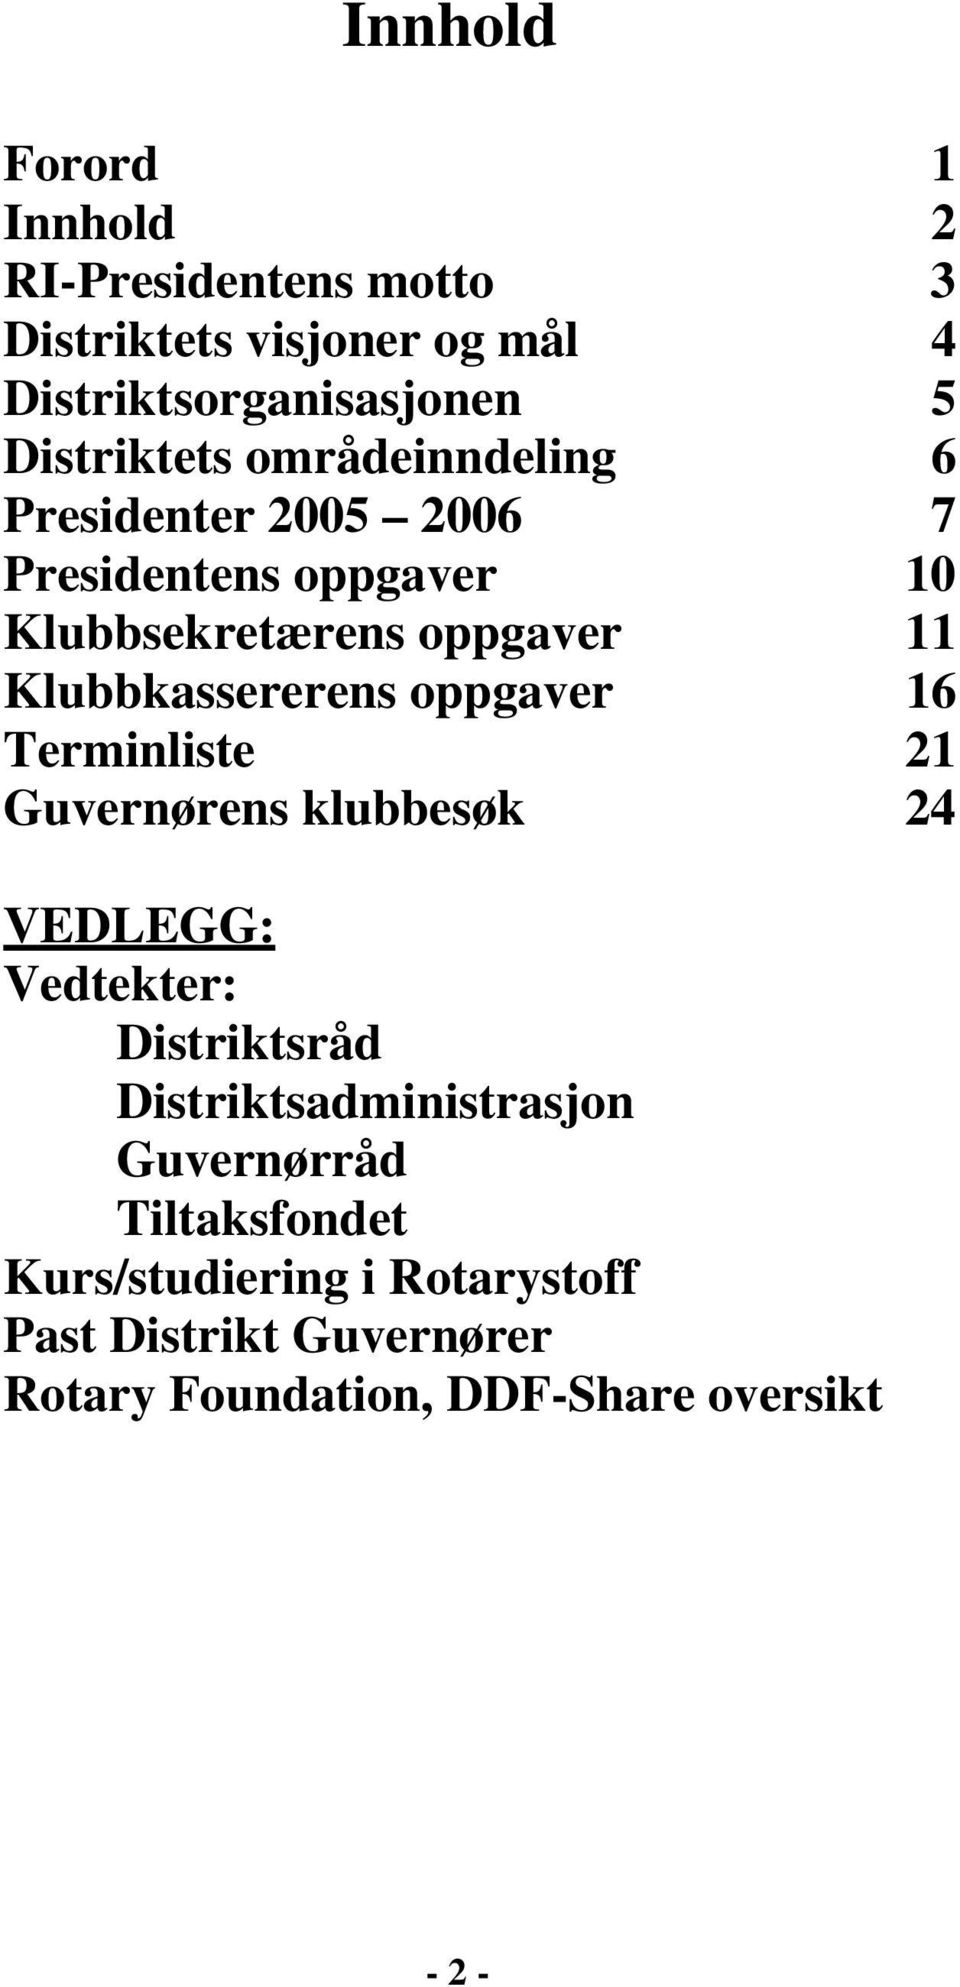 Klubbkassererens oppgaver 16 Terminliste 21 Guvernørens klubbesøk 24 VEDLEGG: Vedtekter: Distriktsråd